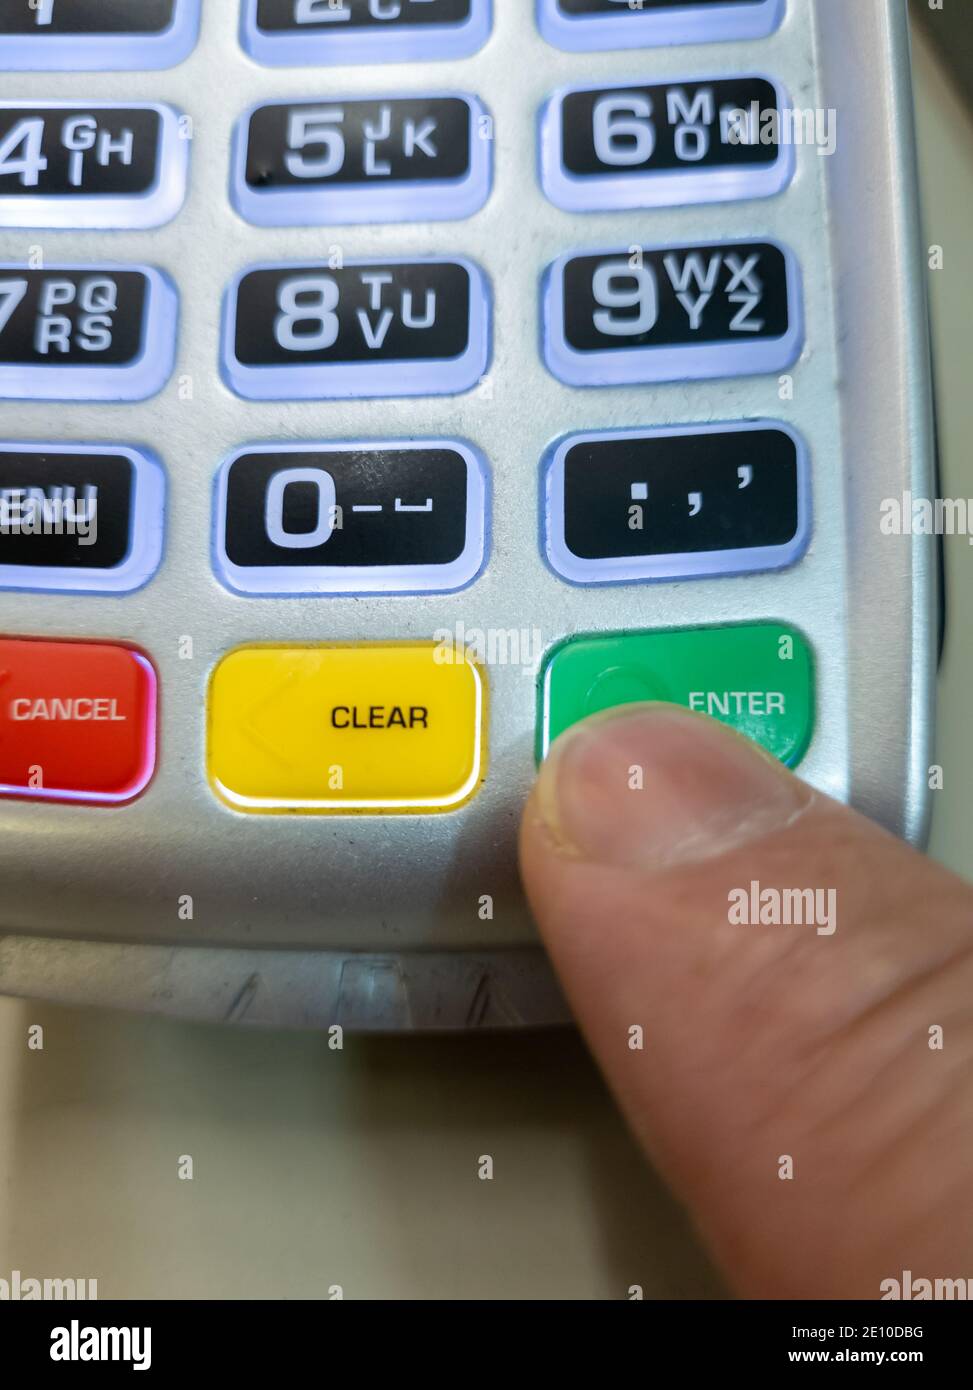 Une personne utilisant un doigt en appuyant sur le bouton ENTER d'un lecteur de carte pour effectuer un paiement. Banque D'Images